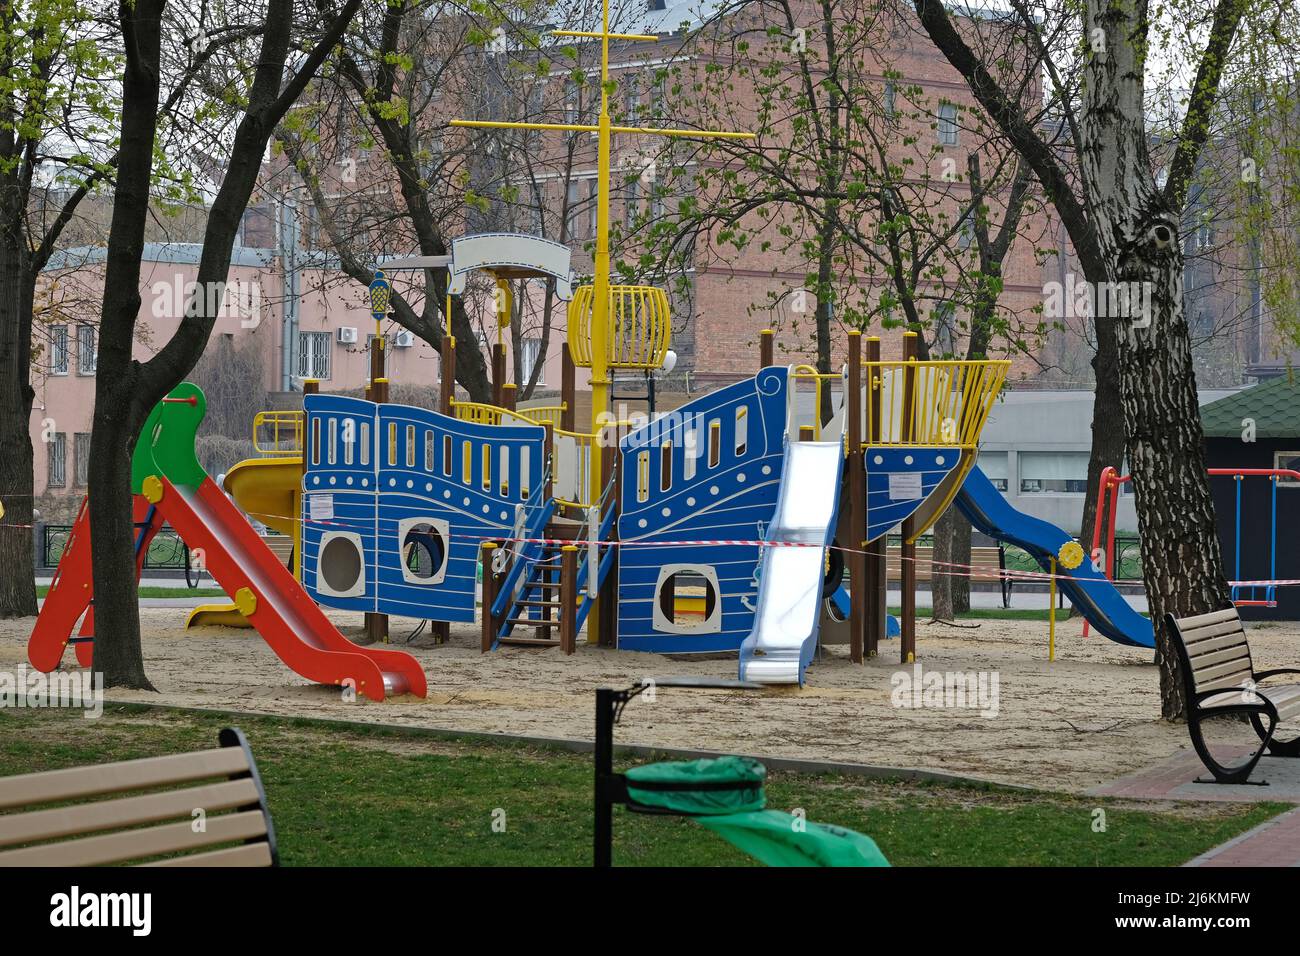 Aire de jeux vide dans le parc de la ville. Aire de jeux en forme de navire, avec toboggans et escaliers. Aire de jeux lumineuse pour les enfants dans le centre-ville. Banque D'Images